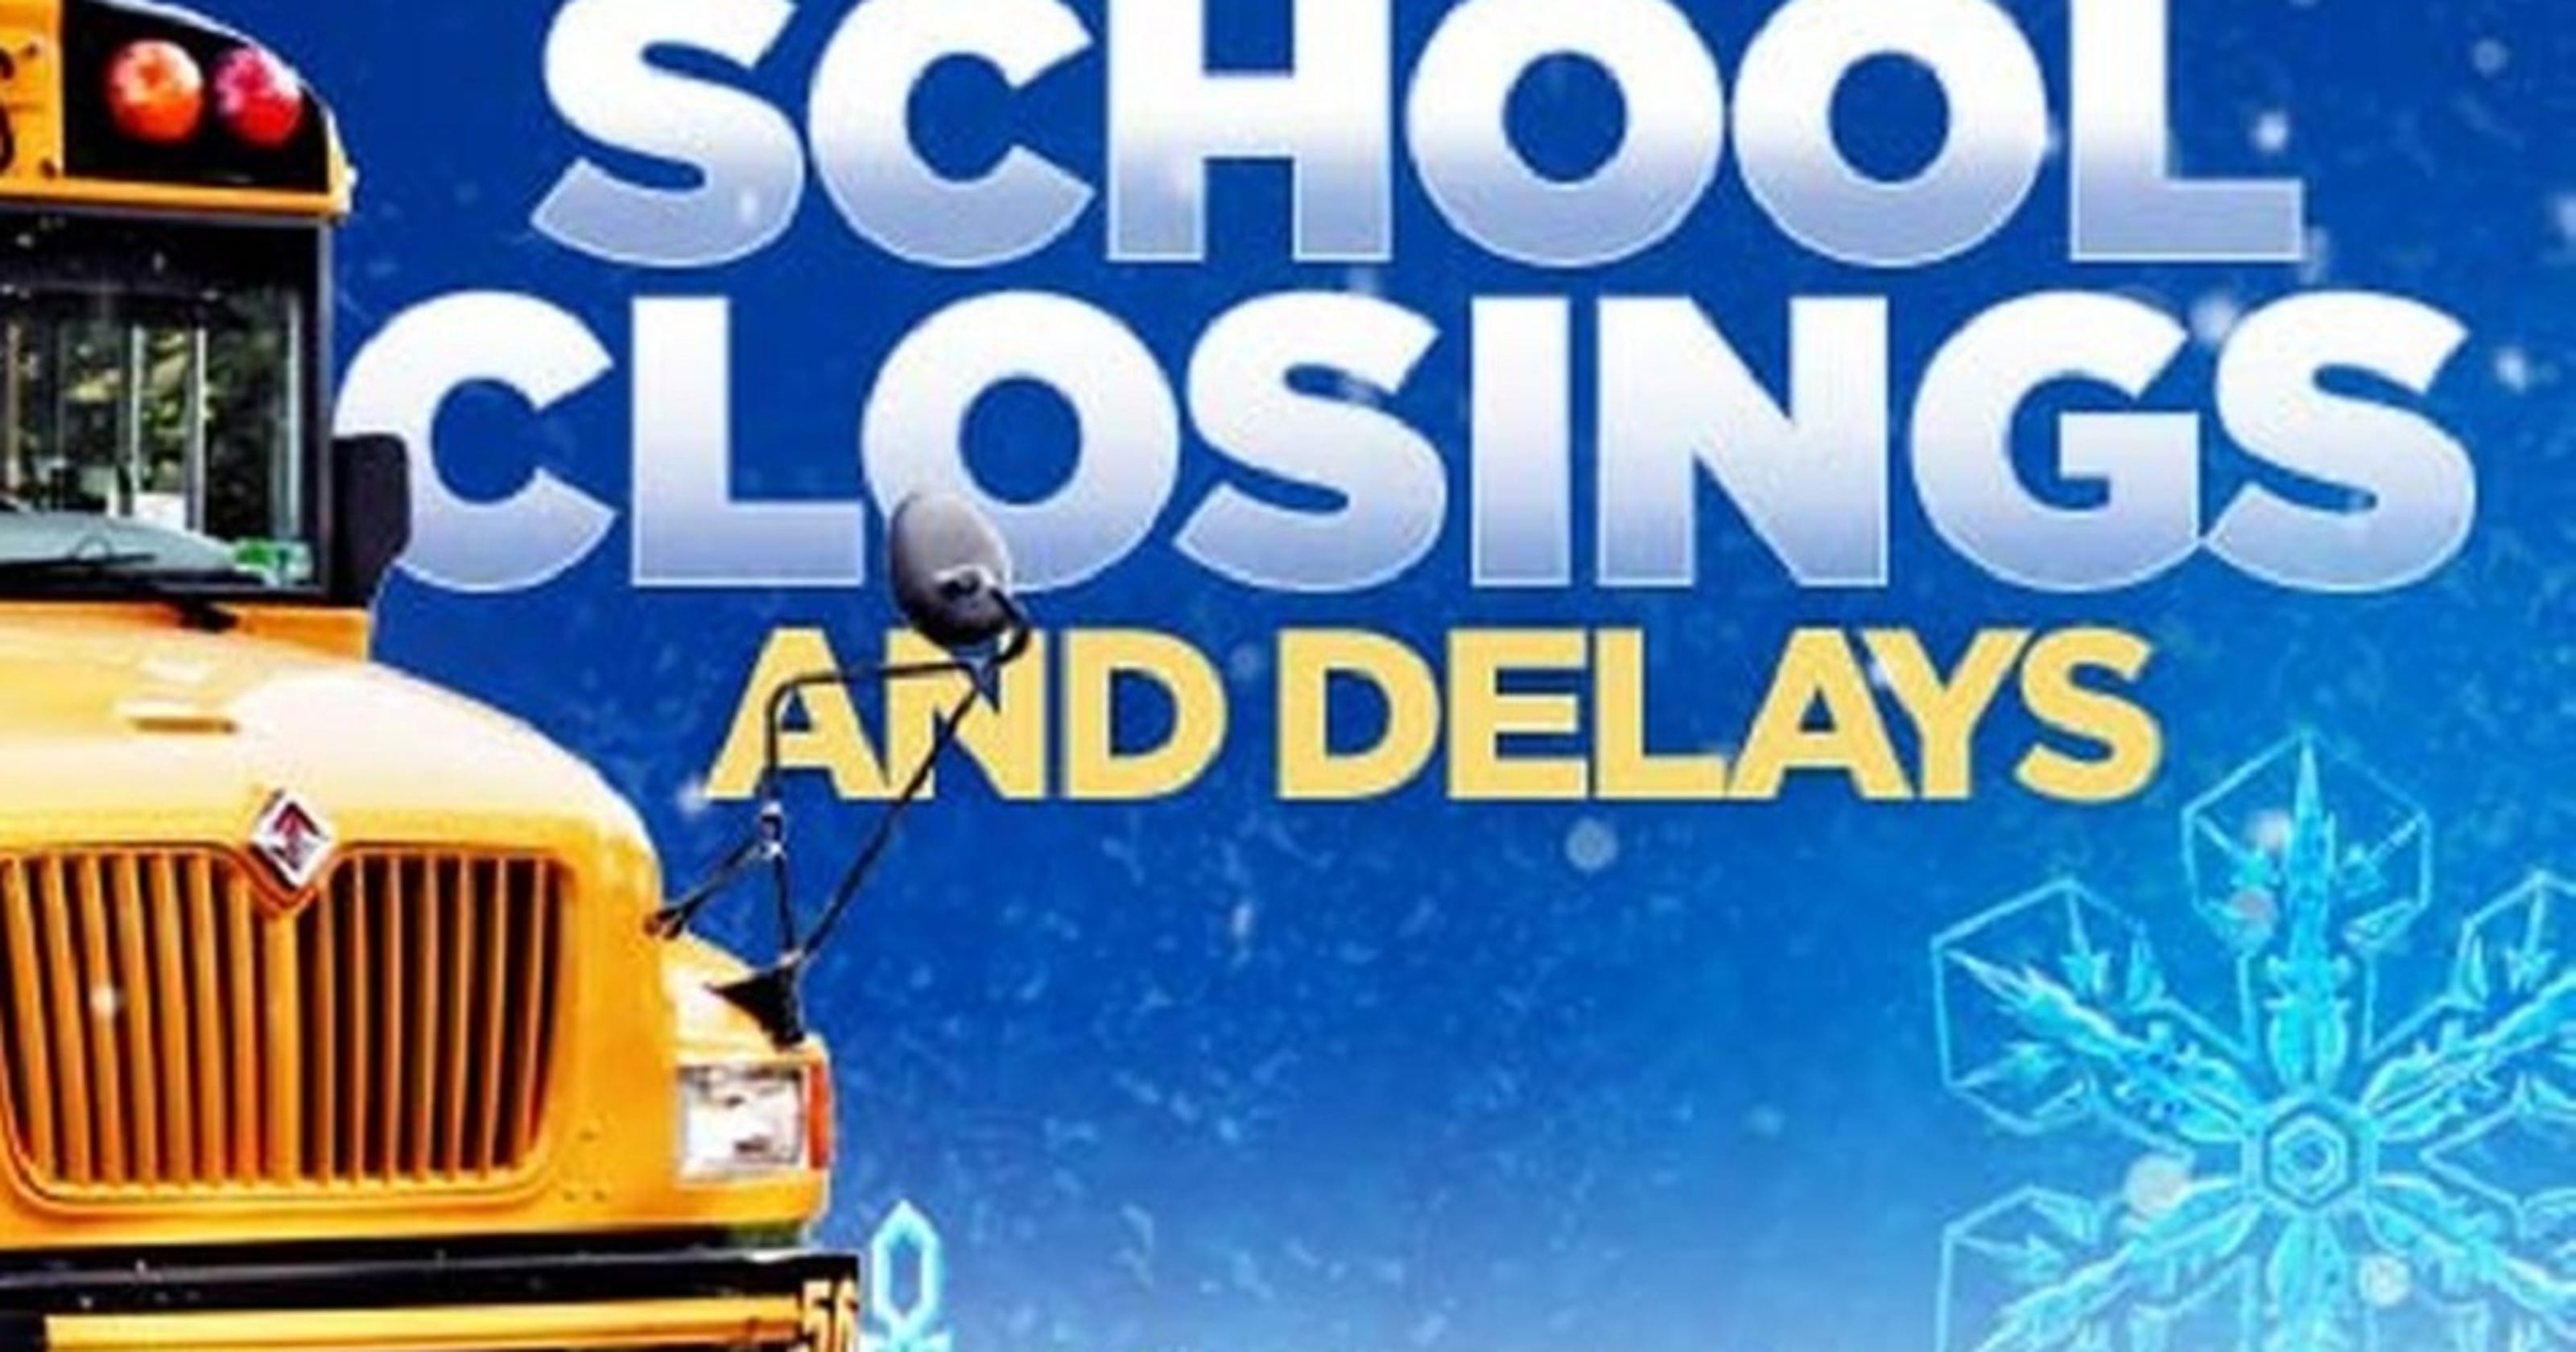 School closings